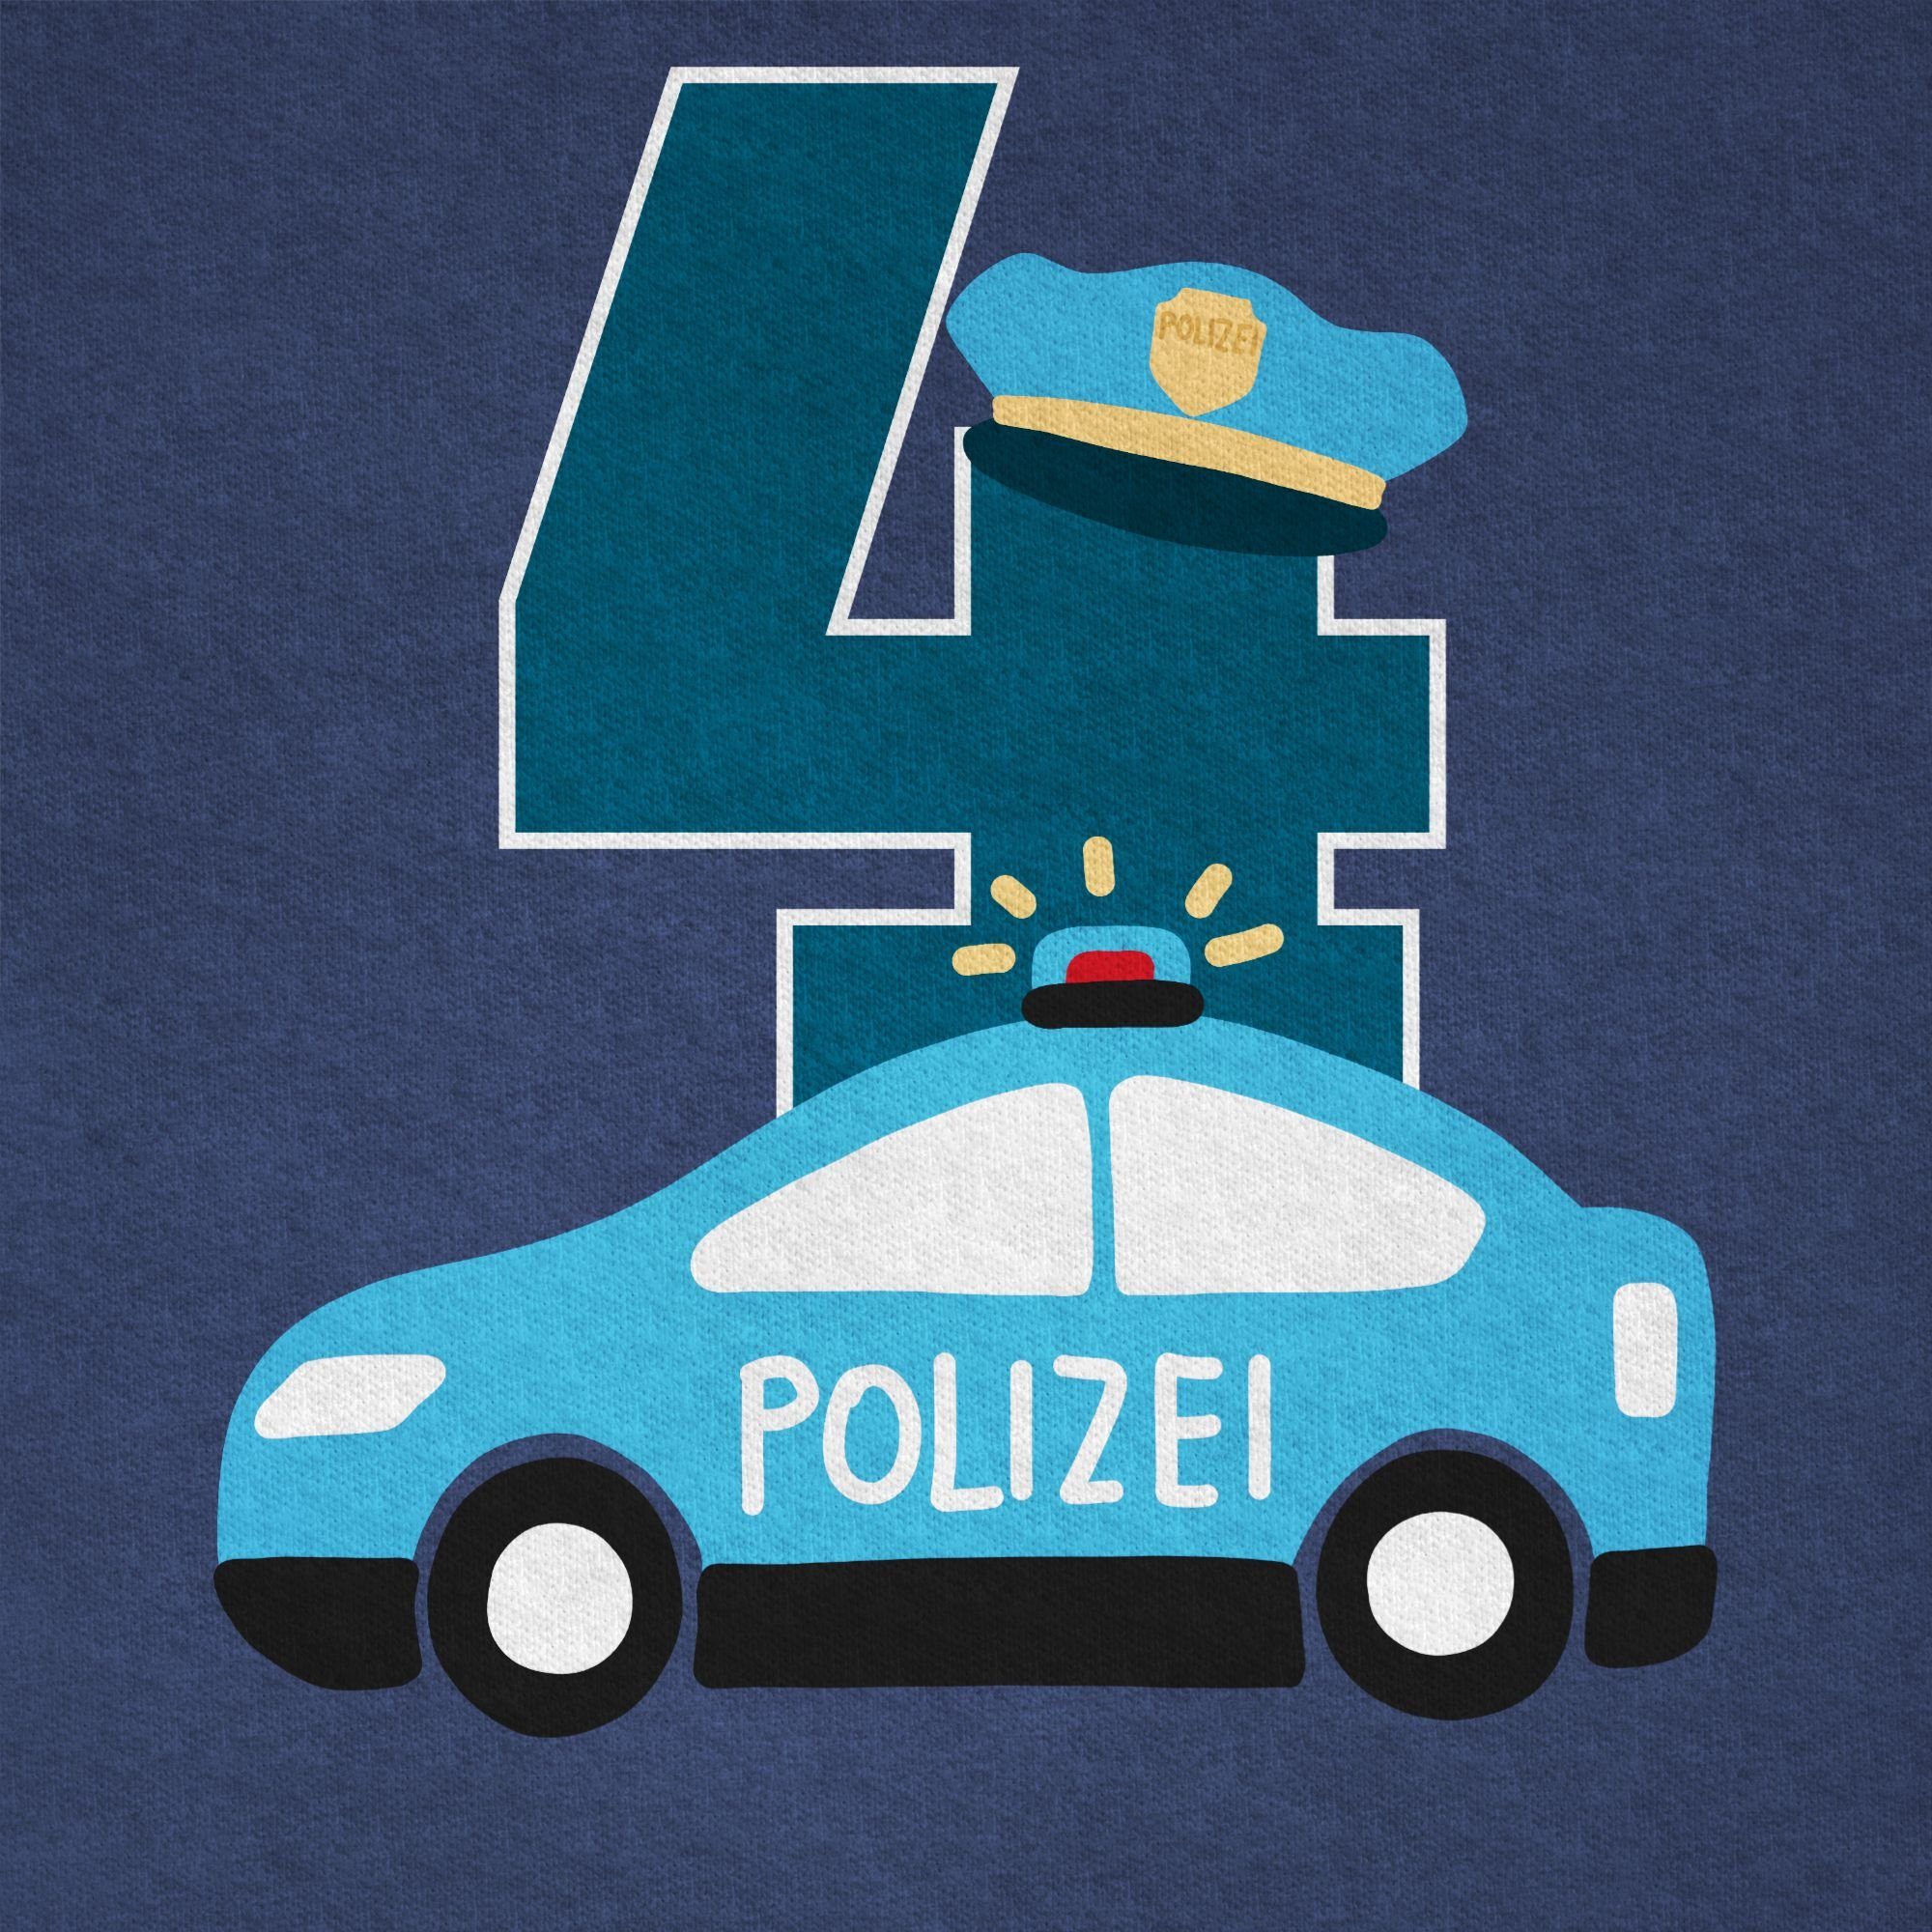 T-Shirt Polizei Dunkelblau Geburtstag 4. Vierter Meliert Shirtracer 2